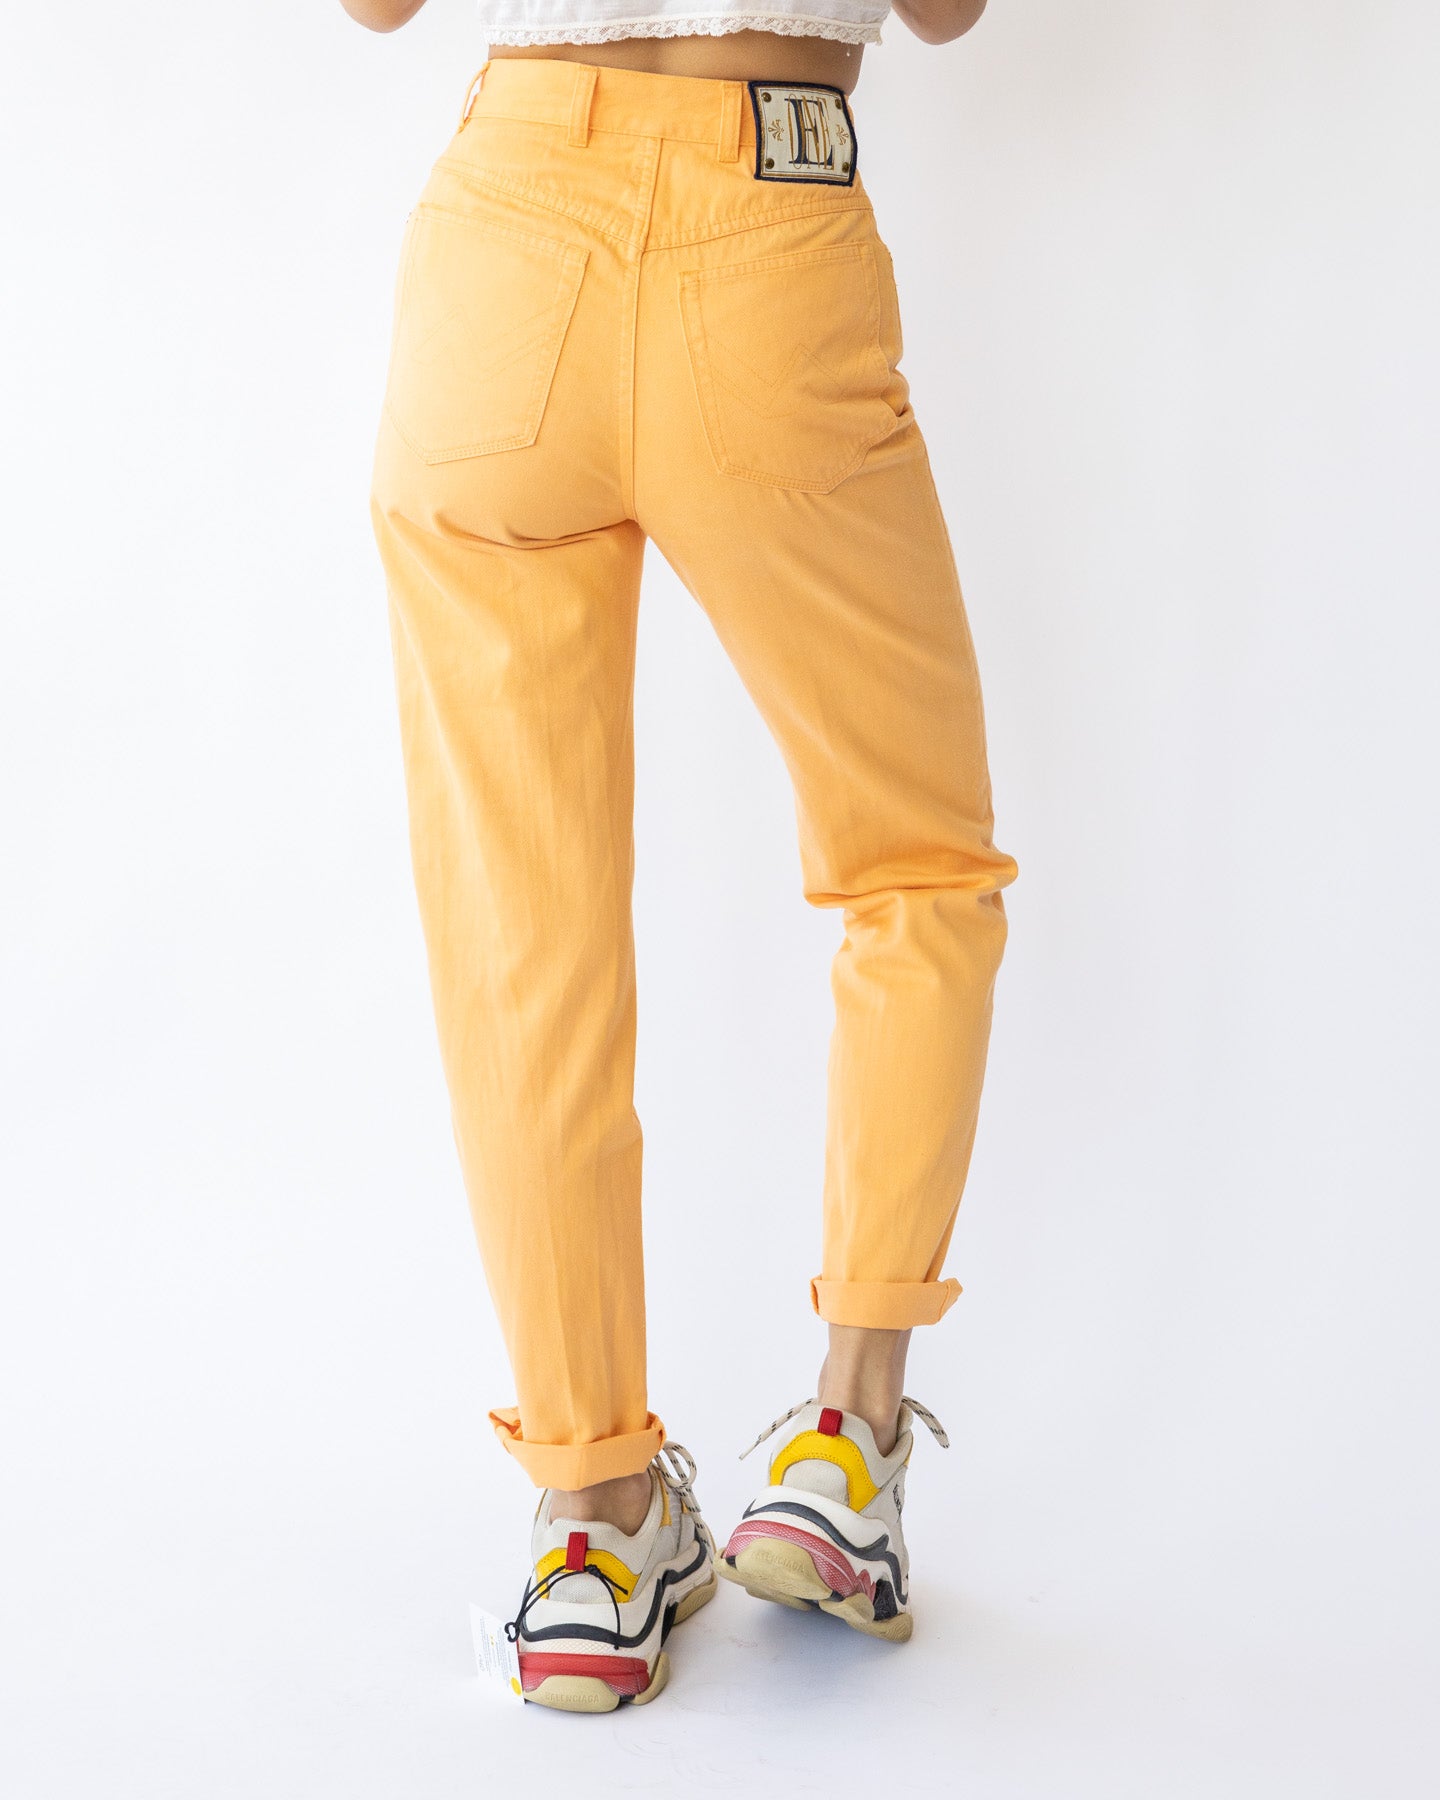 Jeans Mom cintura alta Escada Original laranja - tamanho 32